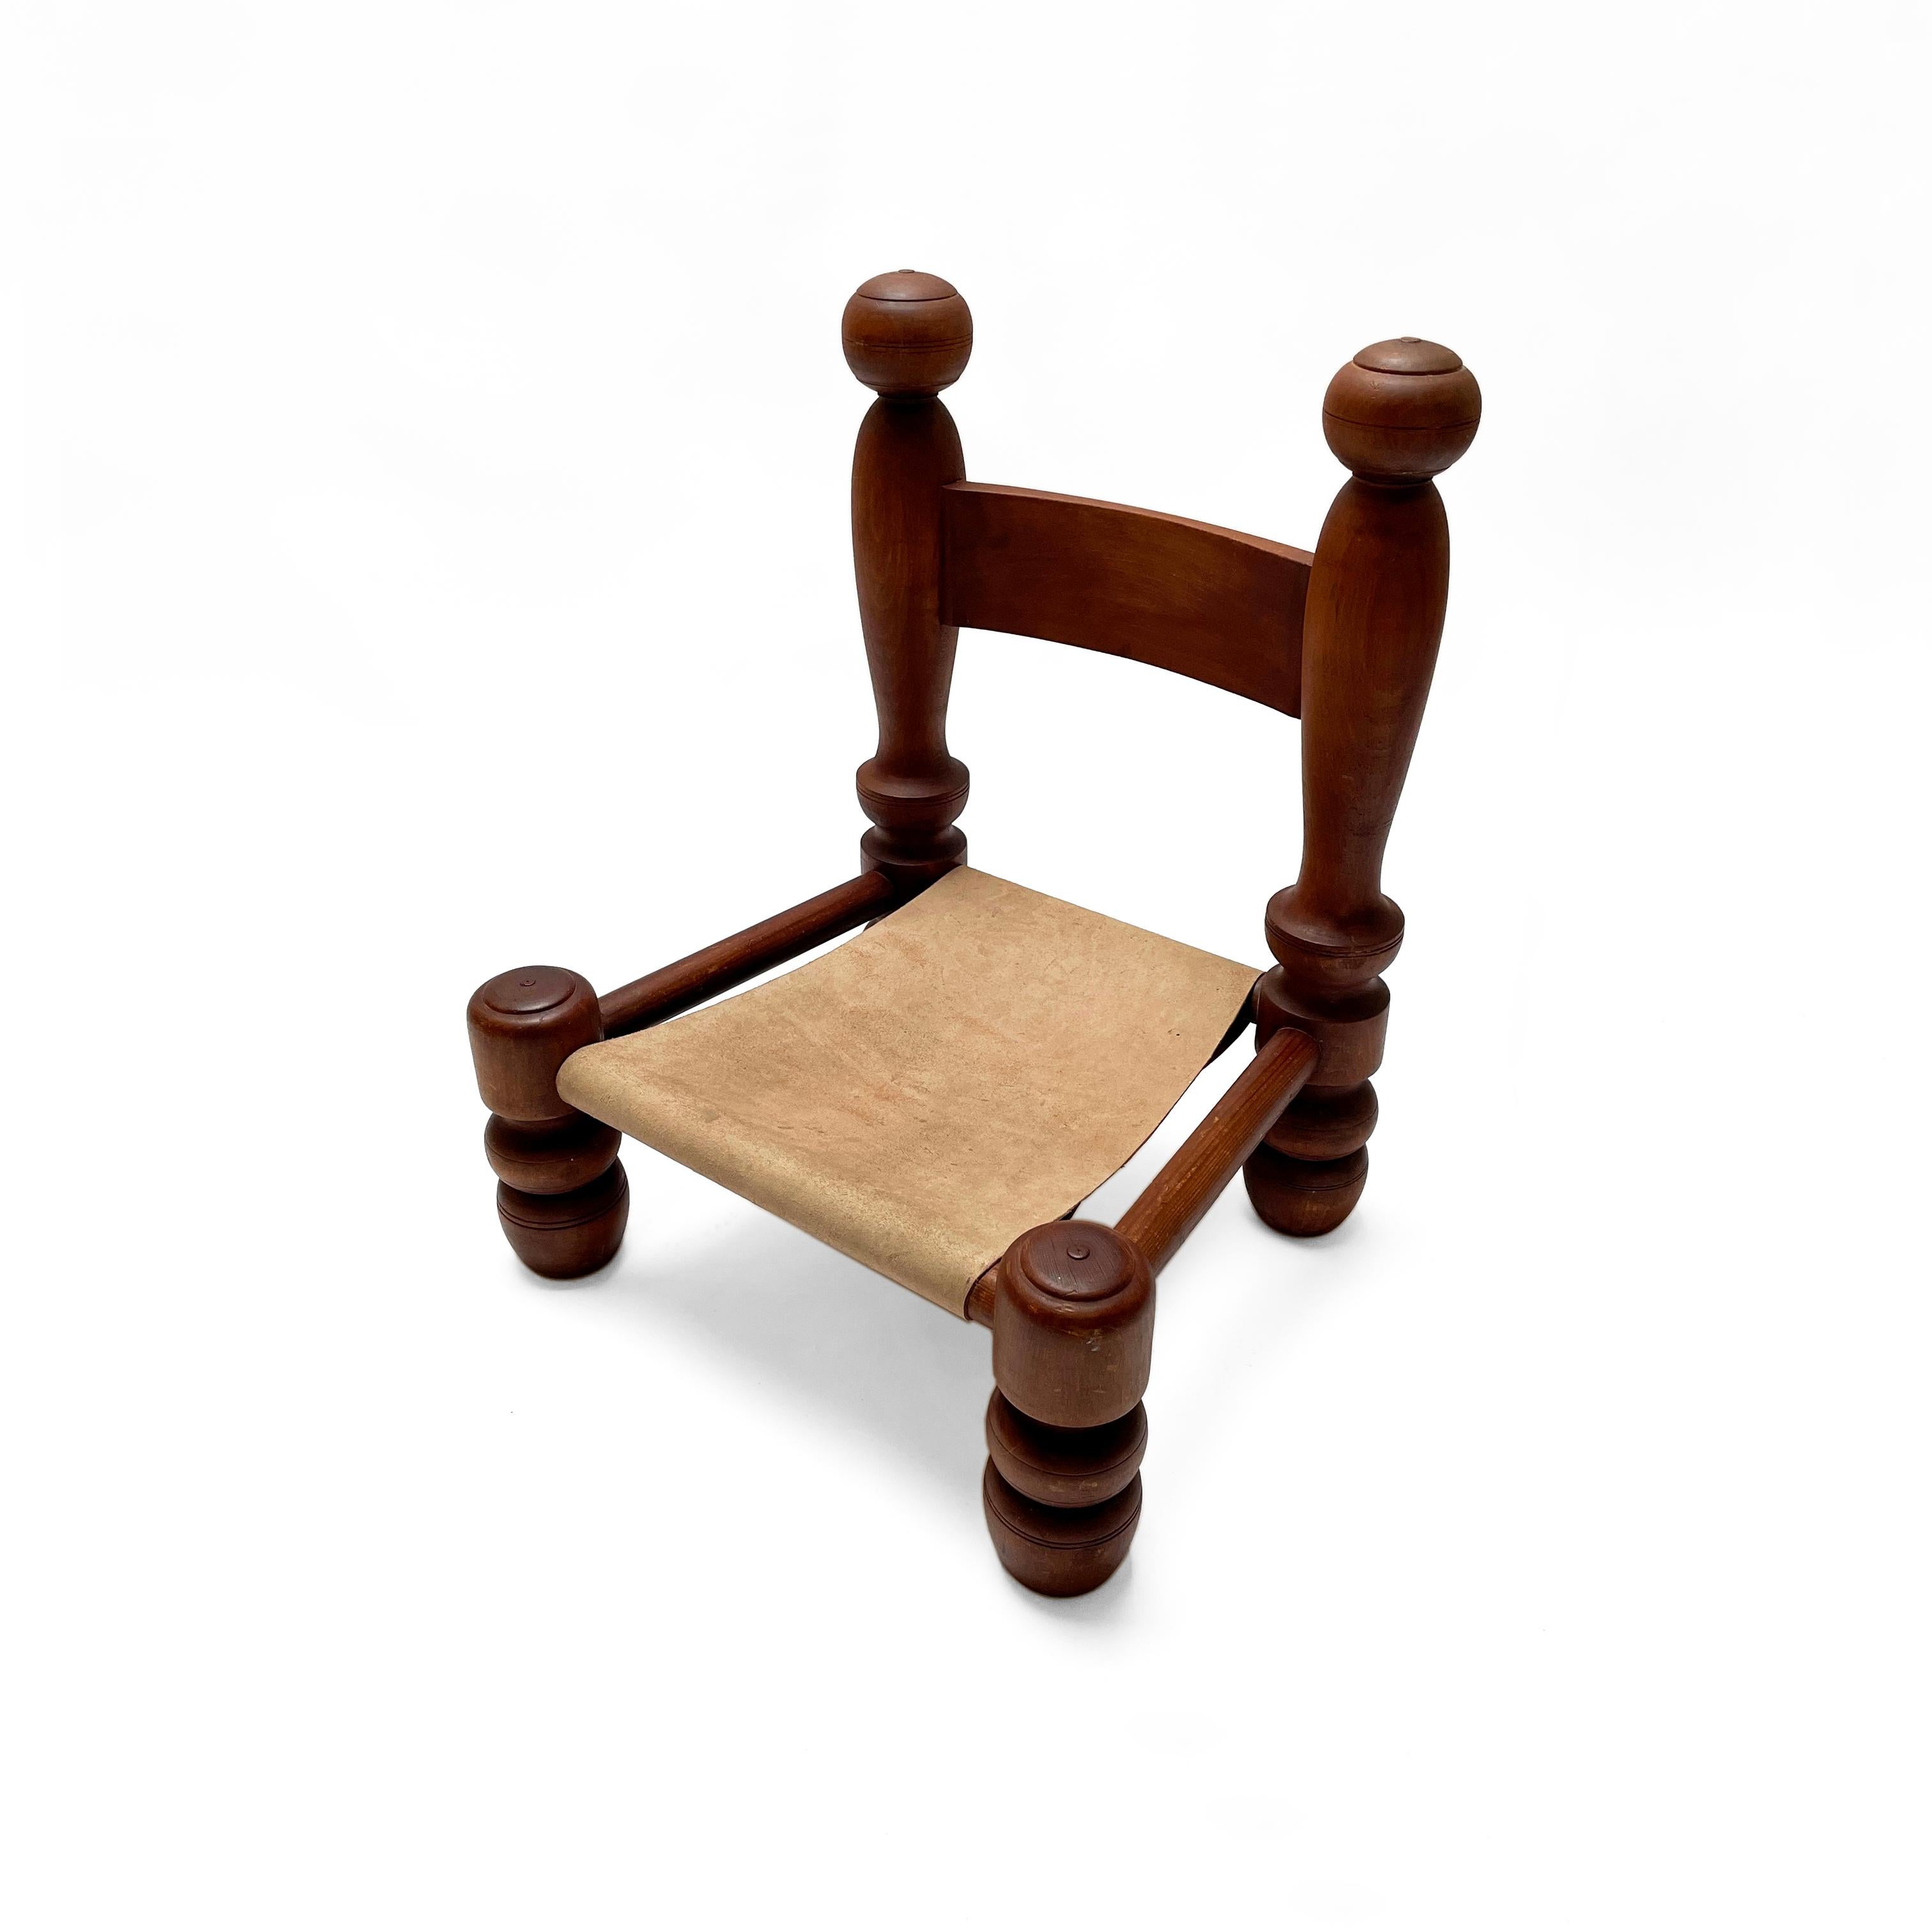 Schöner französischer brutalistischer Sessel oder Beistellstuhl im Stil von Charles Dudouyt aus den 1940er Jahren. Dieser schöne gedrechselte Holzstuhl ist sehr stabil und super bequem.
Das dunkle Holz und das helle Leder bilden einen sehr